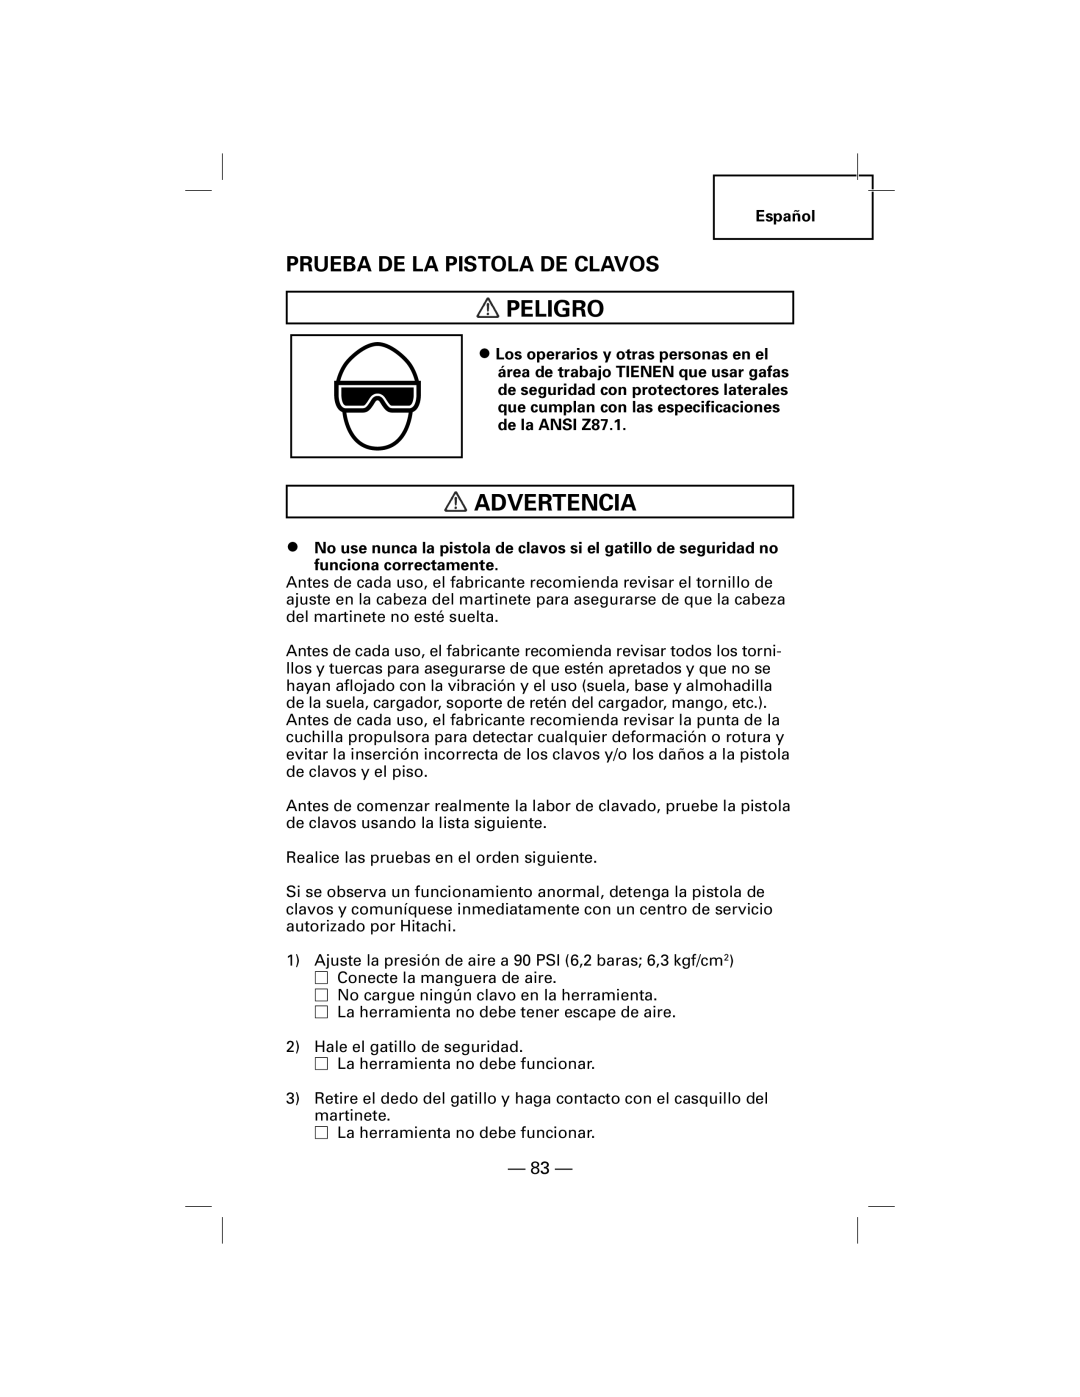 Hitachi NT50AGF manual Prueba De La Pistola De Clavos, Peligro, Advertencia 